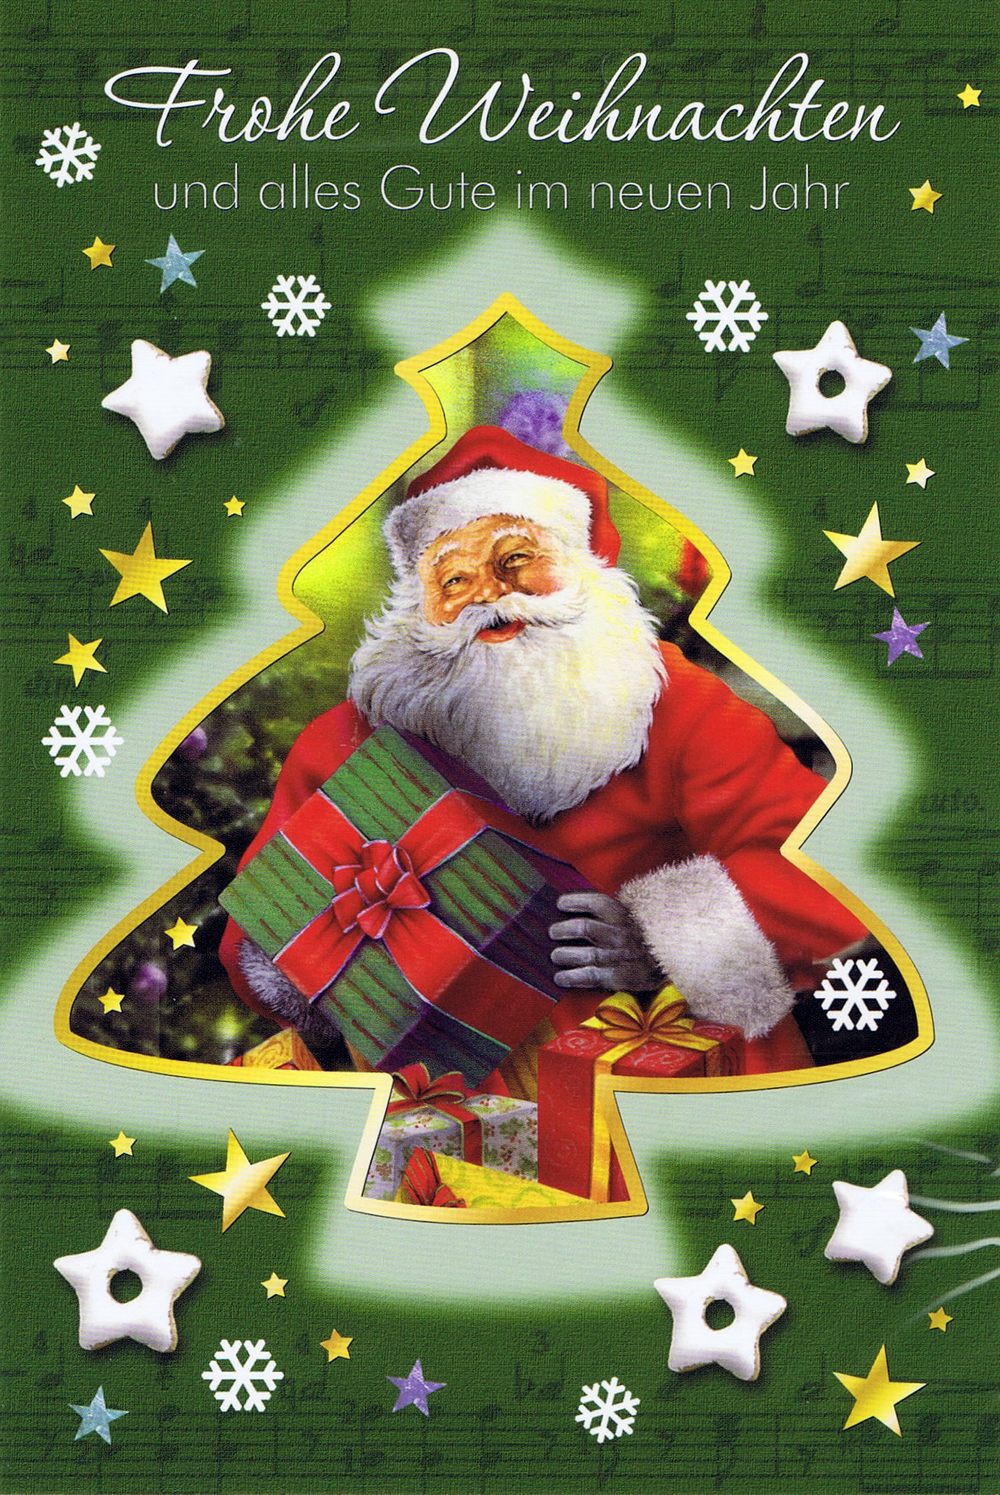 Weihnachtskarte - Weihnachtsbaum mit Weihnachtsmann